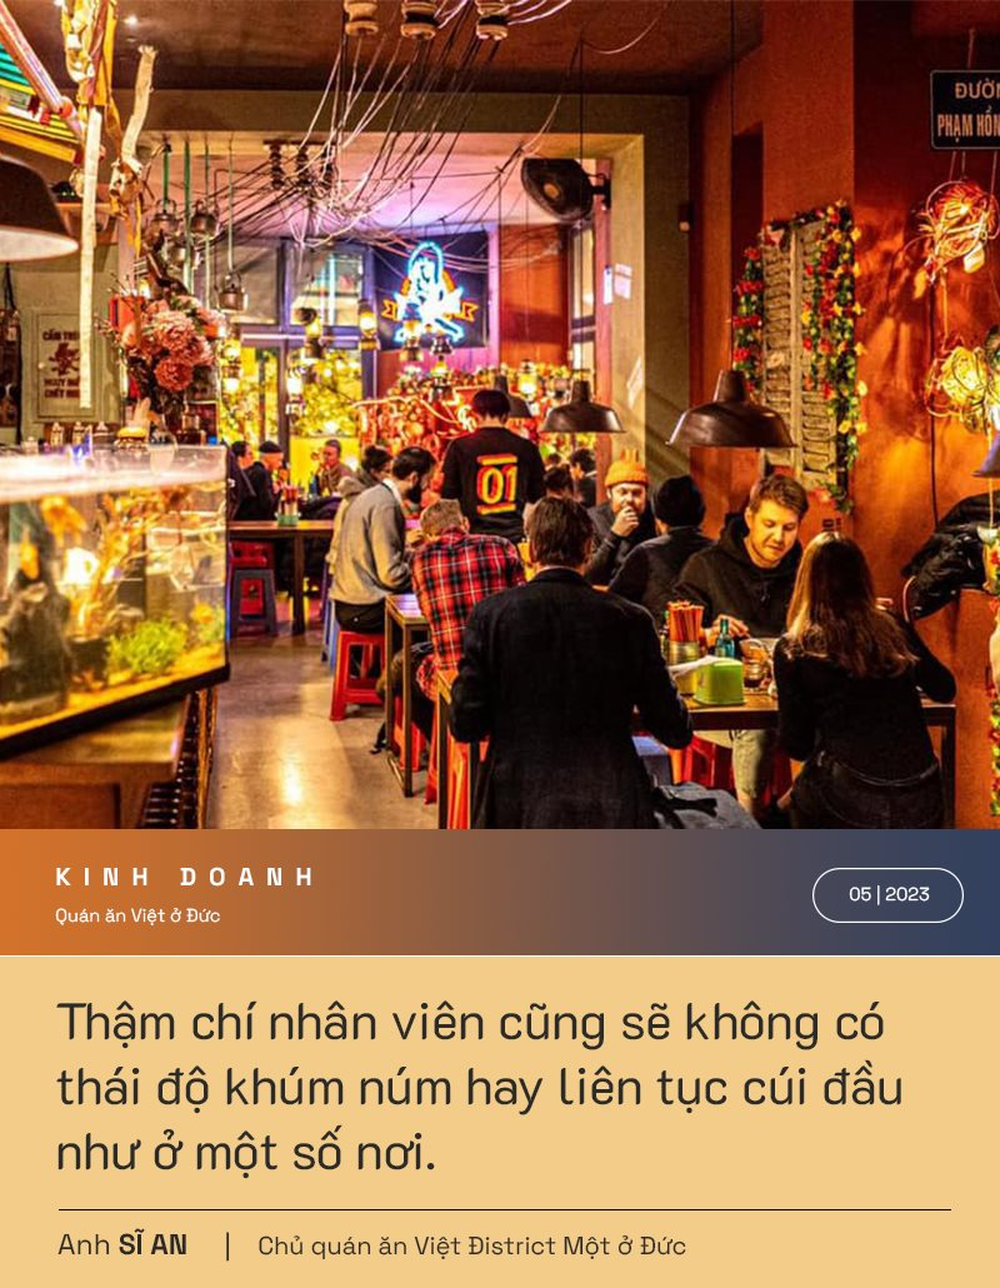 Chủ quán ăn Việt ngon nhất ở Đức tiết lộ bí quyết “chẳng có gì đặc biệt” chinh phục bà Merkel, Tom Cruise và dàn sao Hollywood - Ảnh 3.